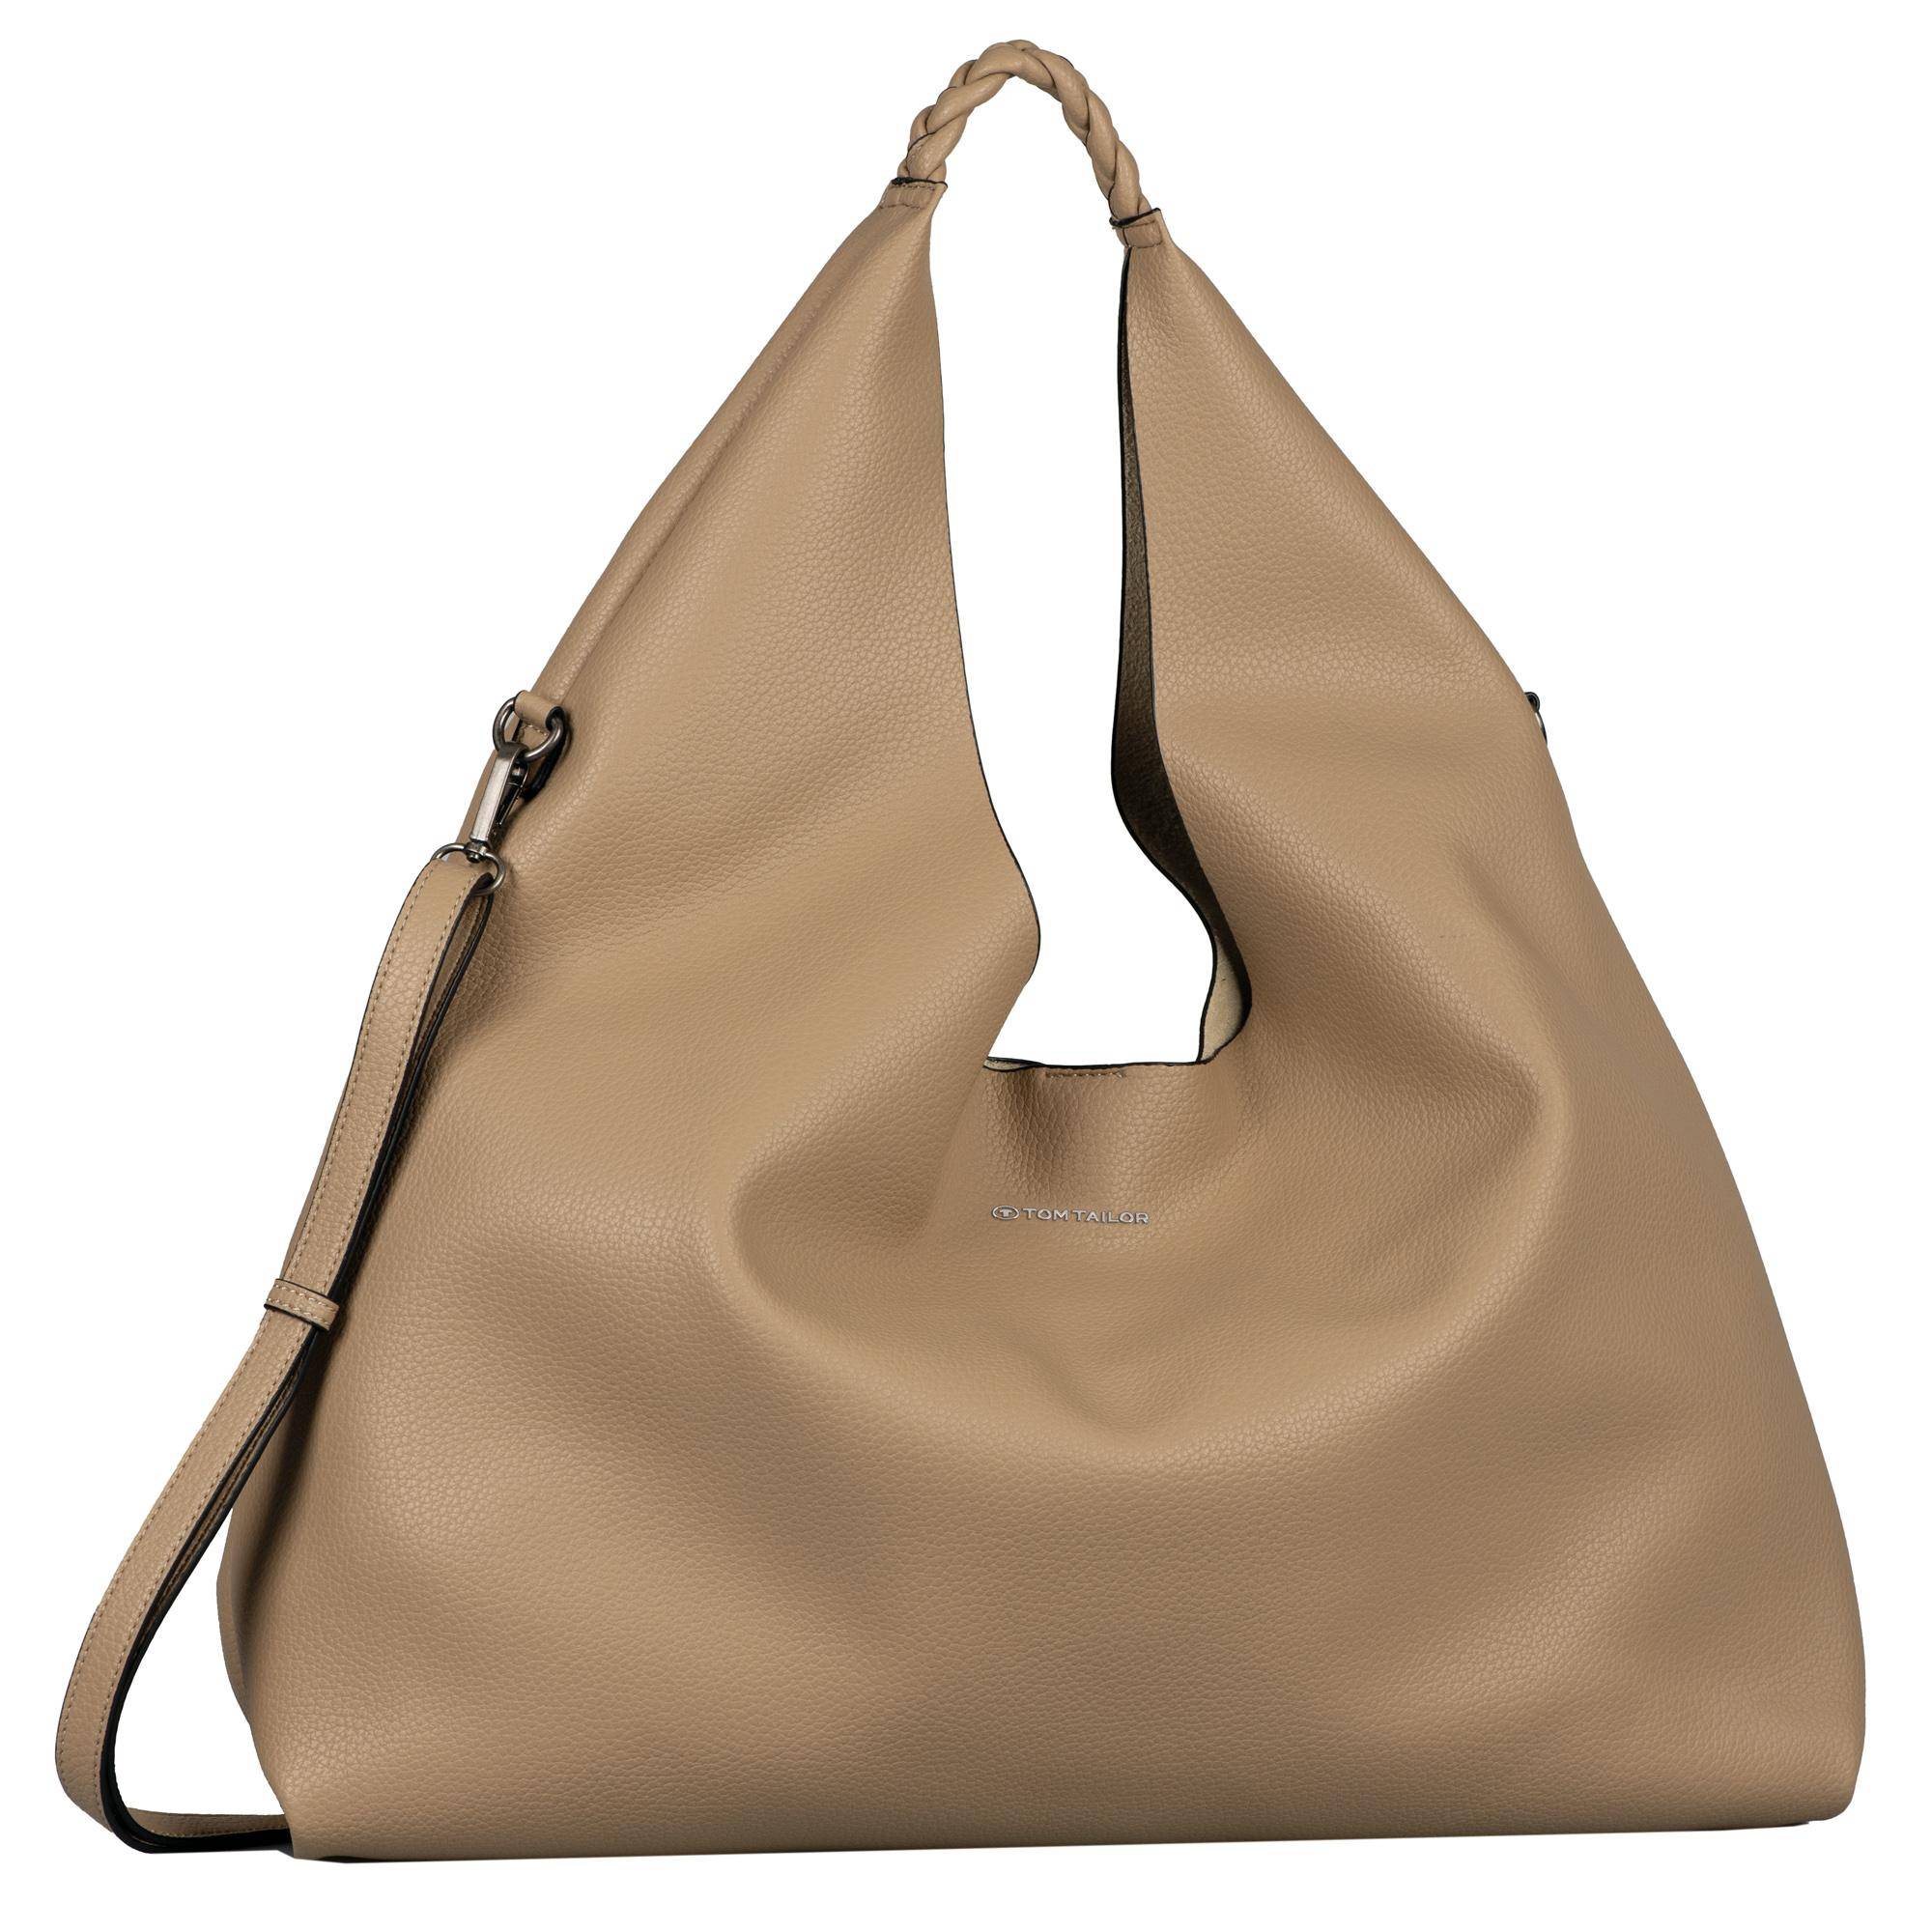 Женская сумка Pepe Jeans Bags, бежевая, цвет бежевый, размер ONE SIZE